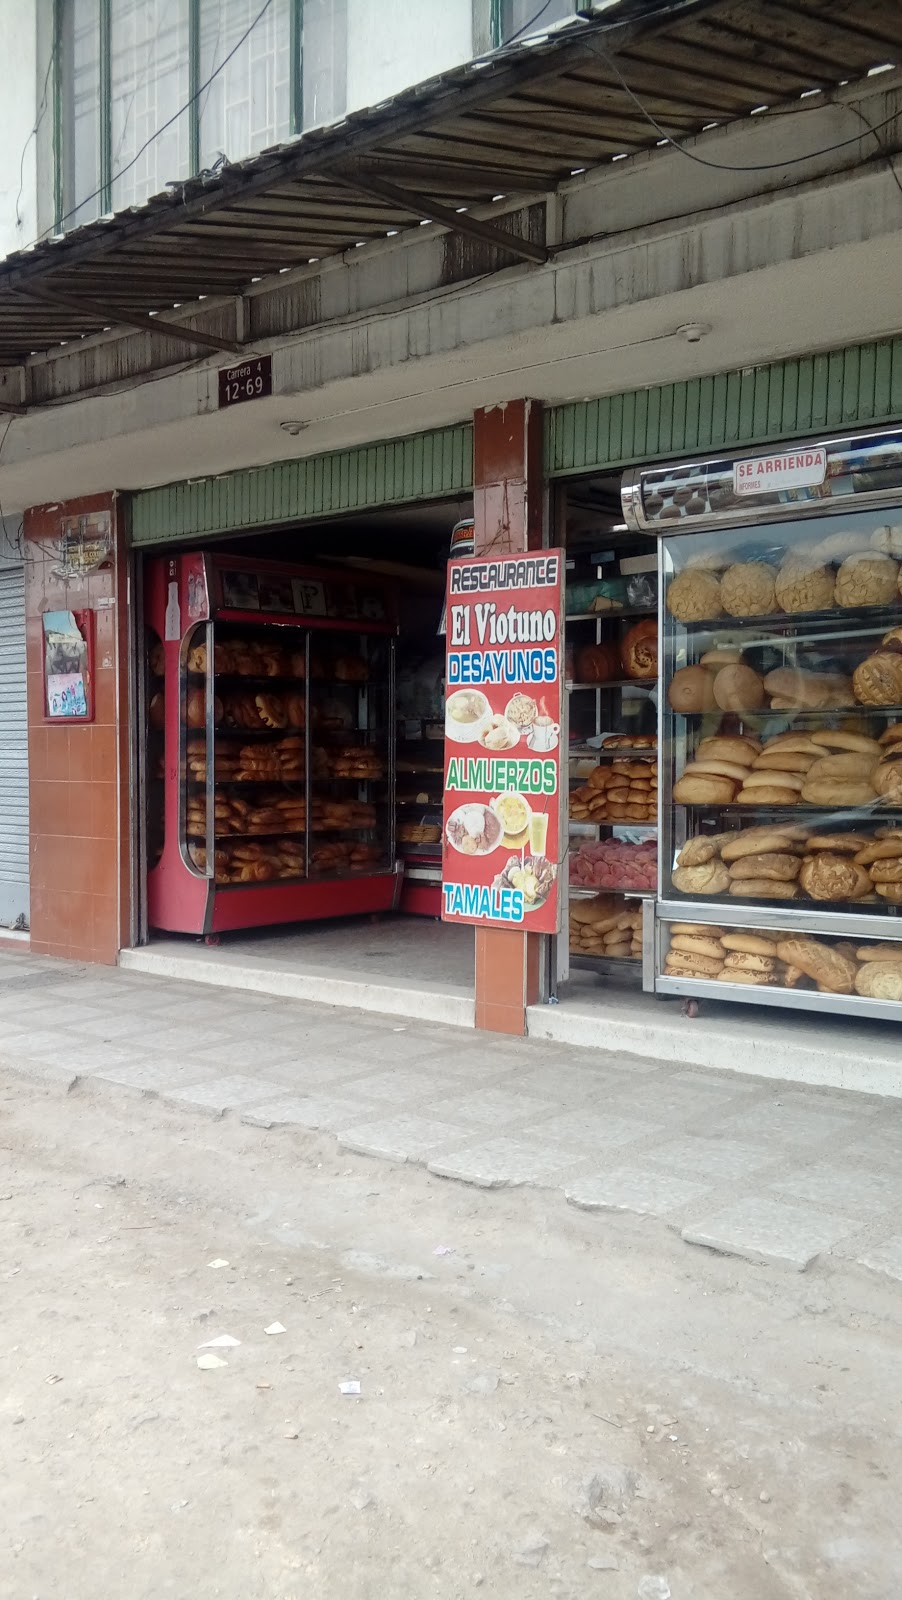 Panadería El Viotuno